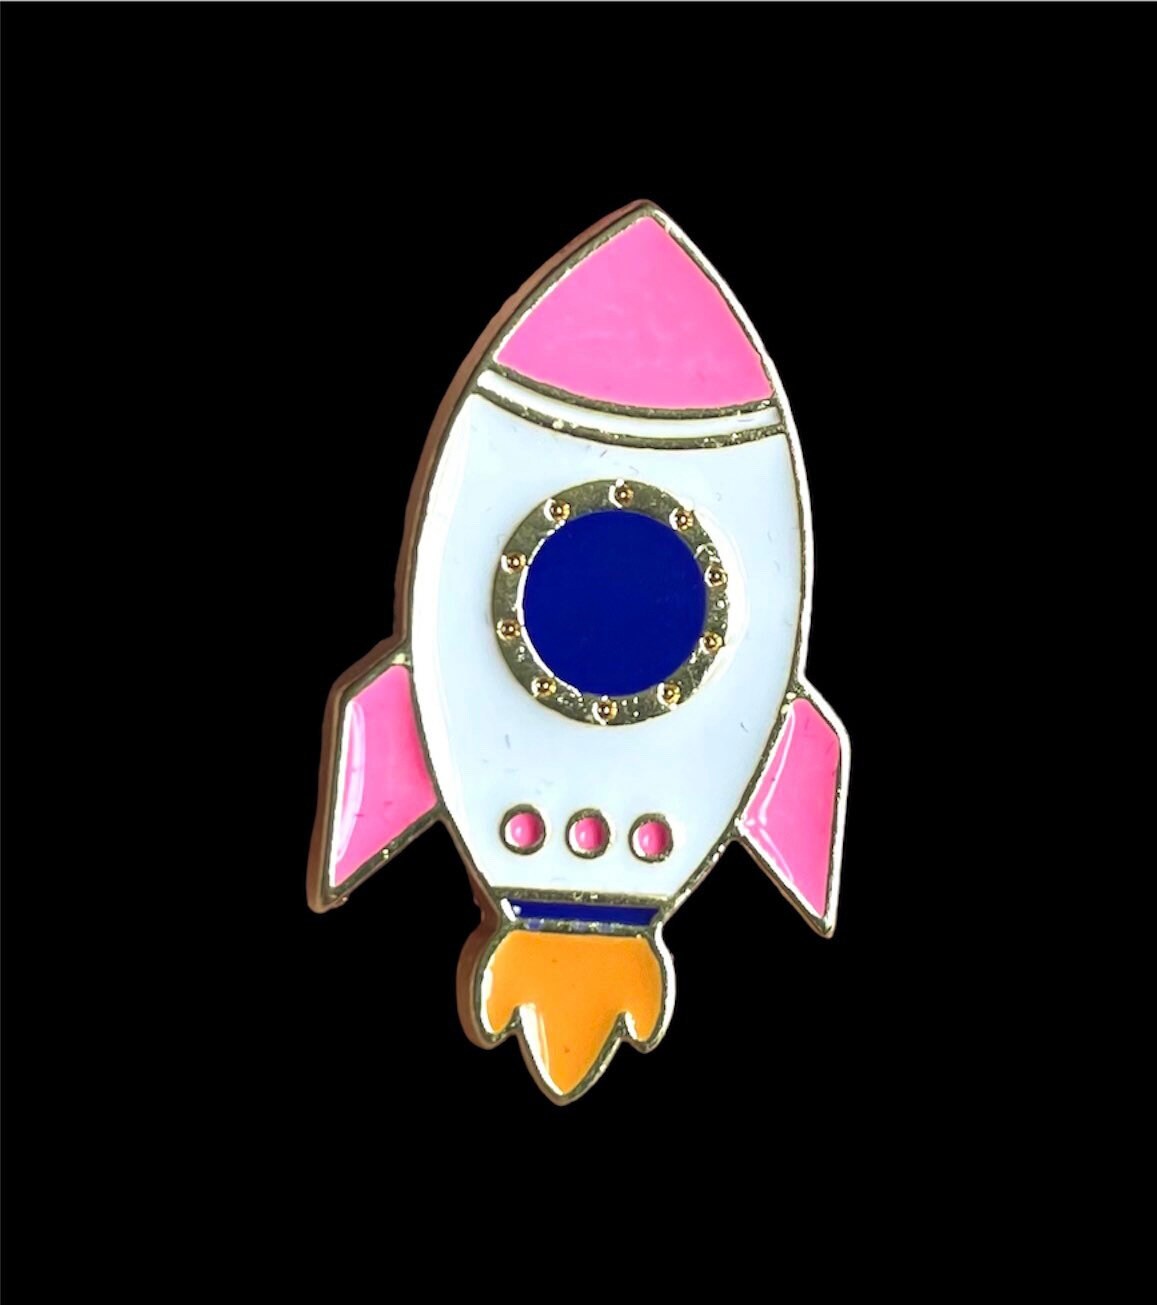 rocket enamel pin badge, 35mm